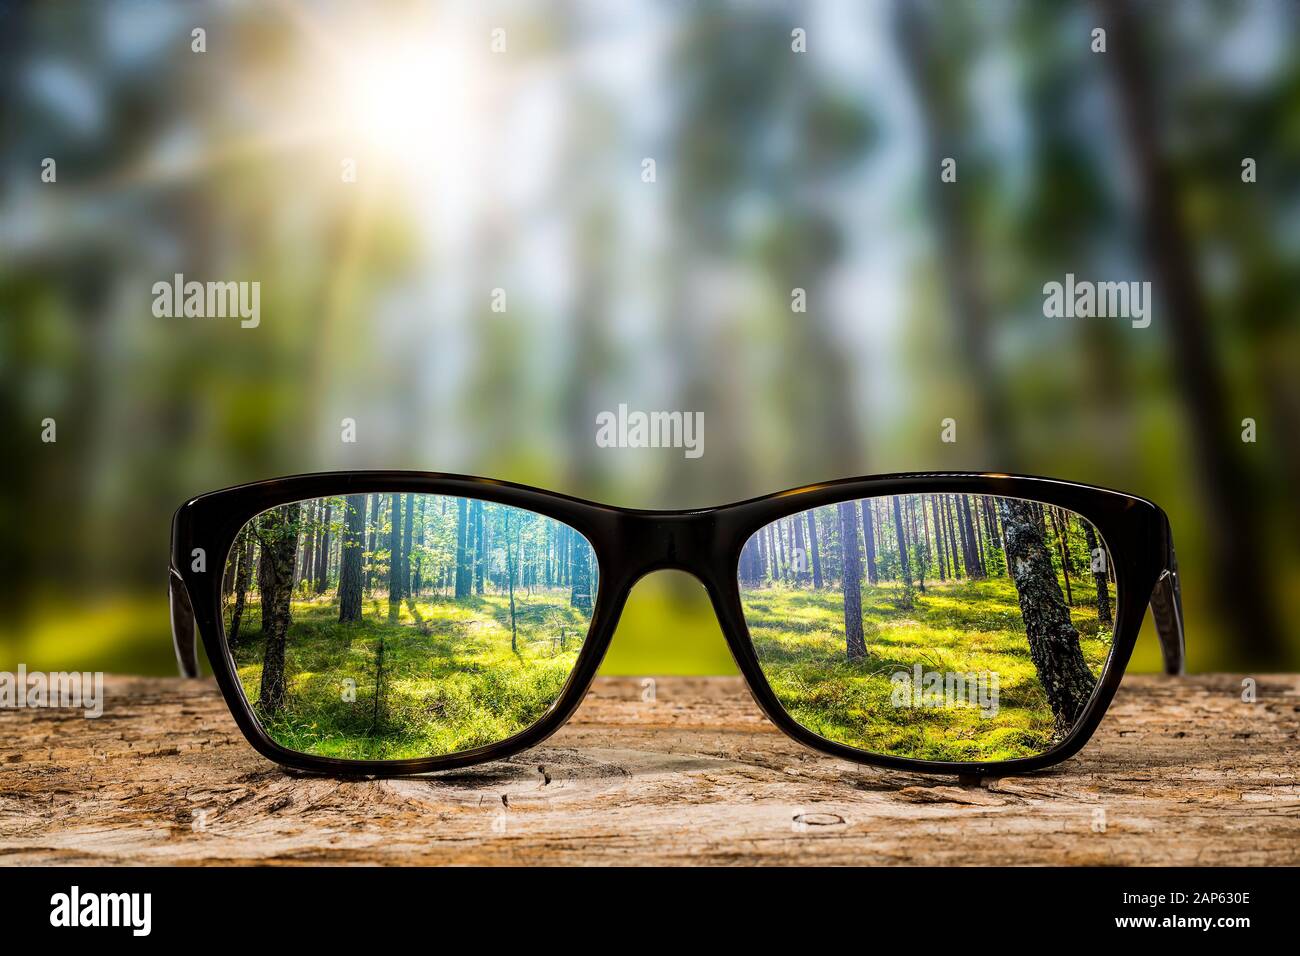 L'accent lunettes en bois fond eye vision lunettes lentilles réflexion nature regard regarder par voir clair transparent concept vue sunrise prescrip Banque D'Images